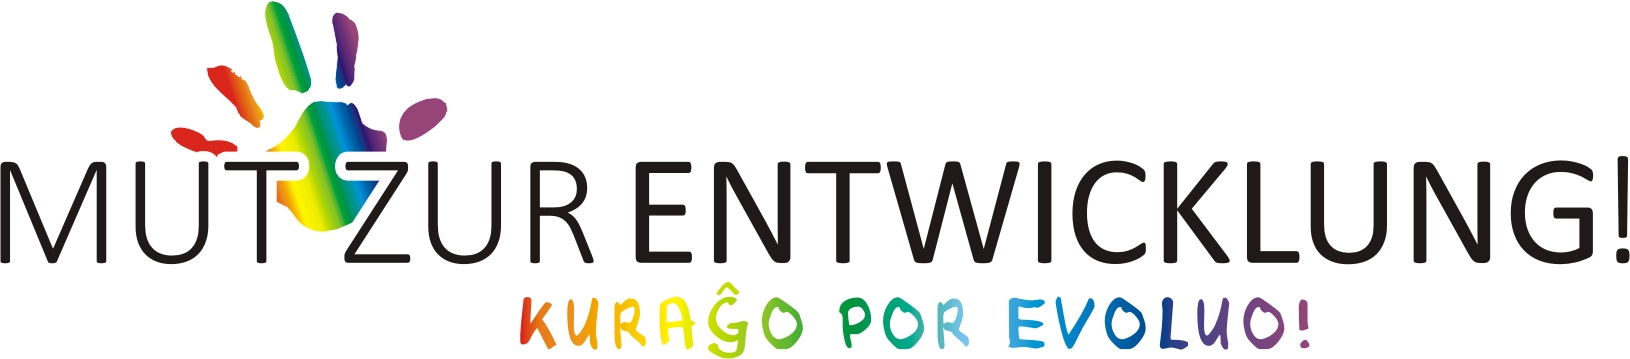 Gezeigt wird das Logo des Kinderzentrum Weißer Stein und der Text Mut zur Entwicklung. Dieser wird außerdem in die Plansprache Esperanto übersetzt: Kurago por Evoluo